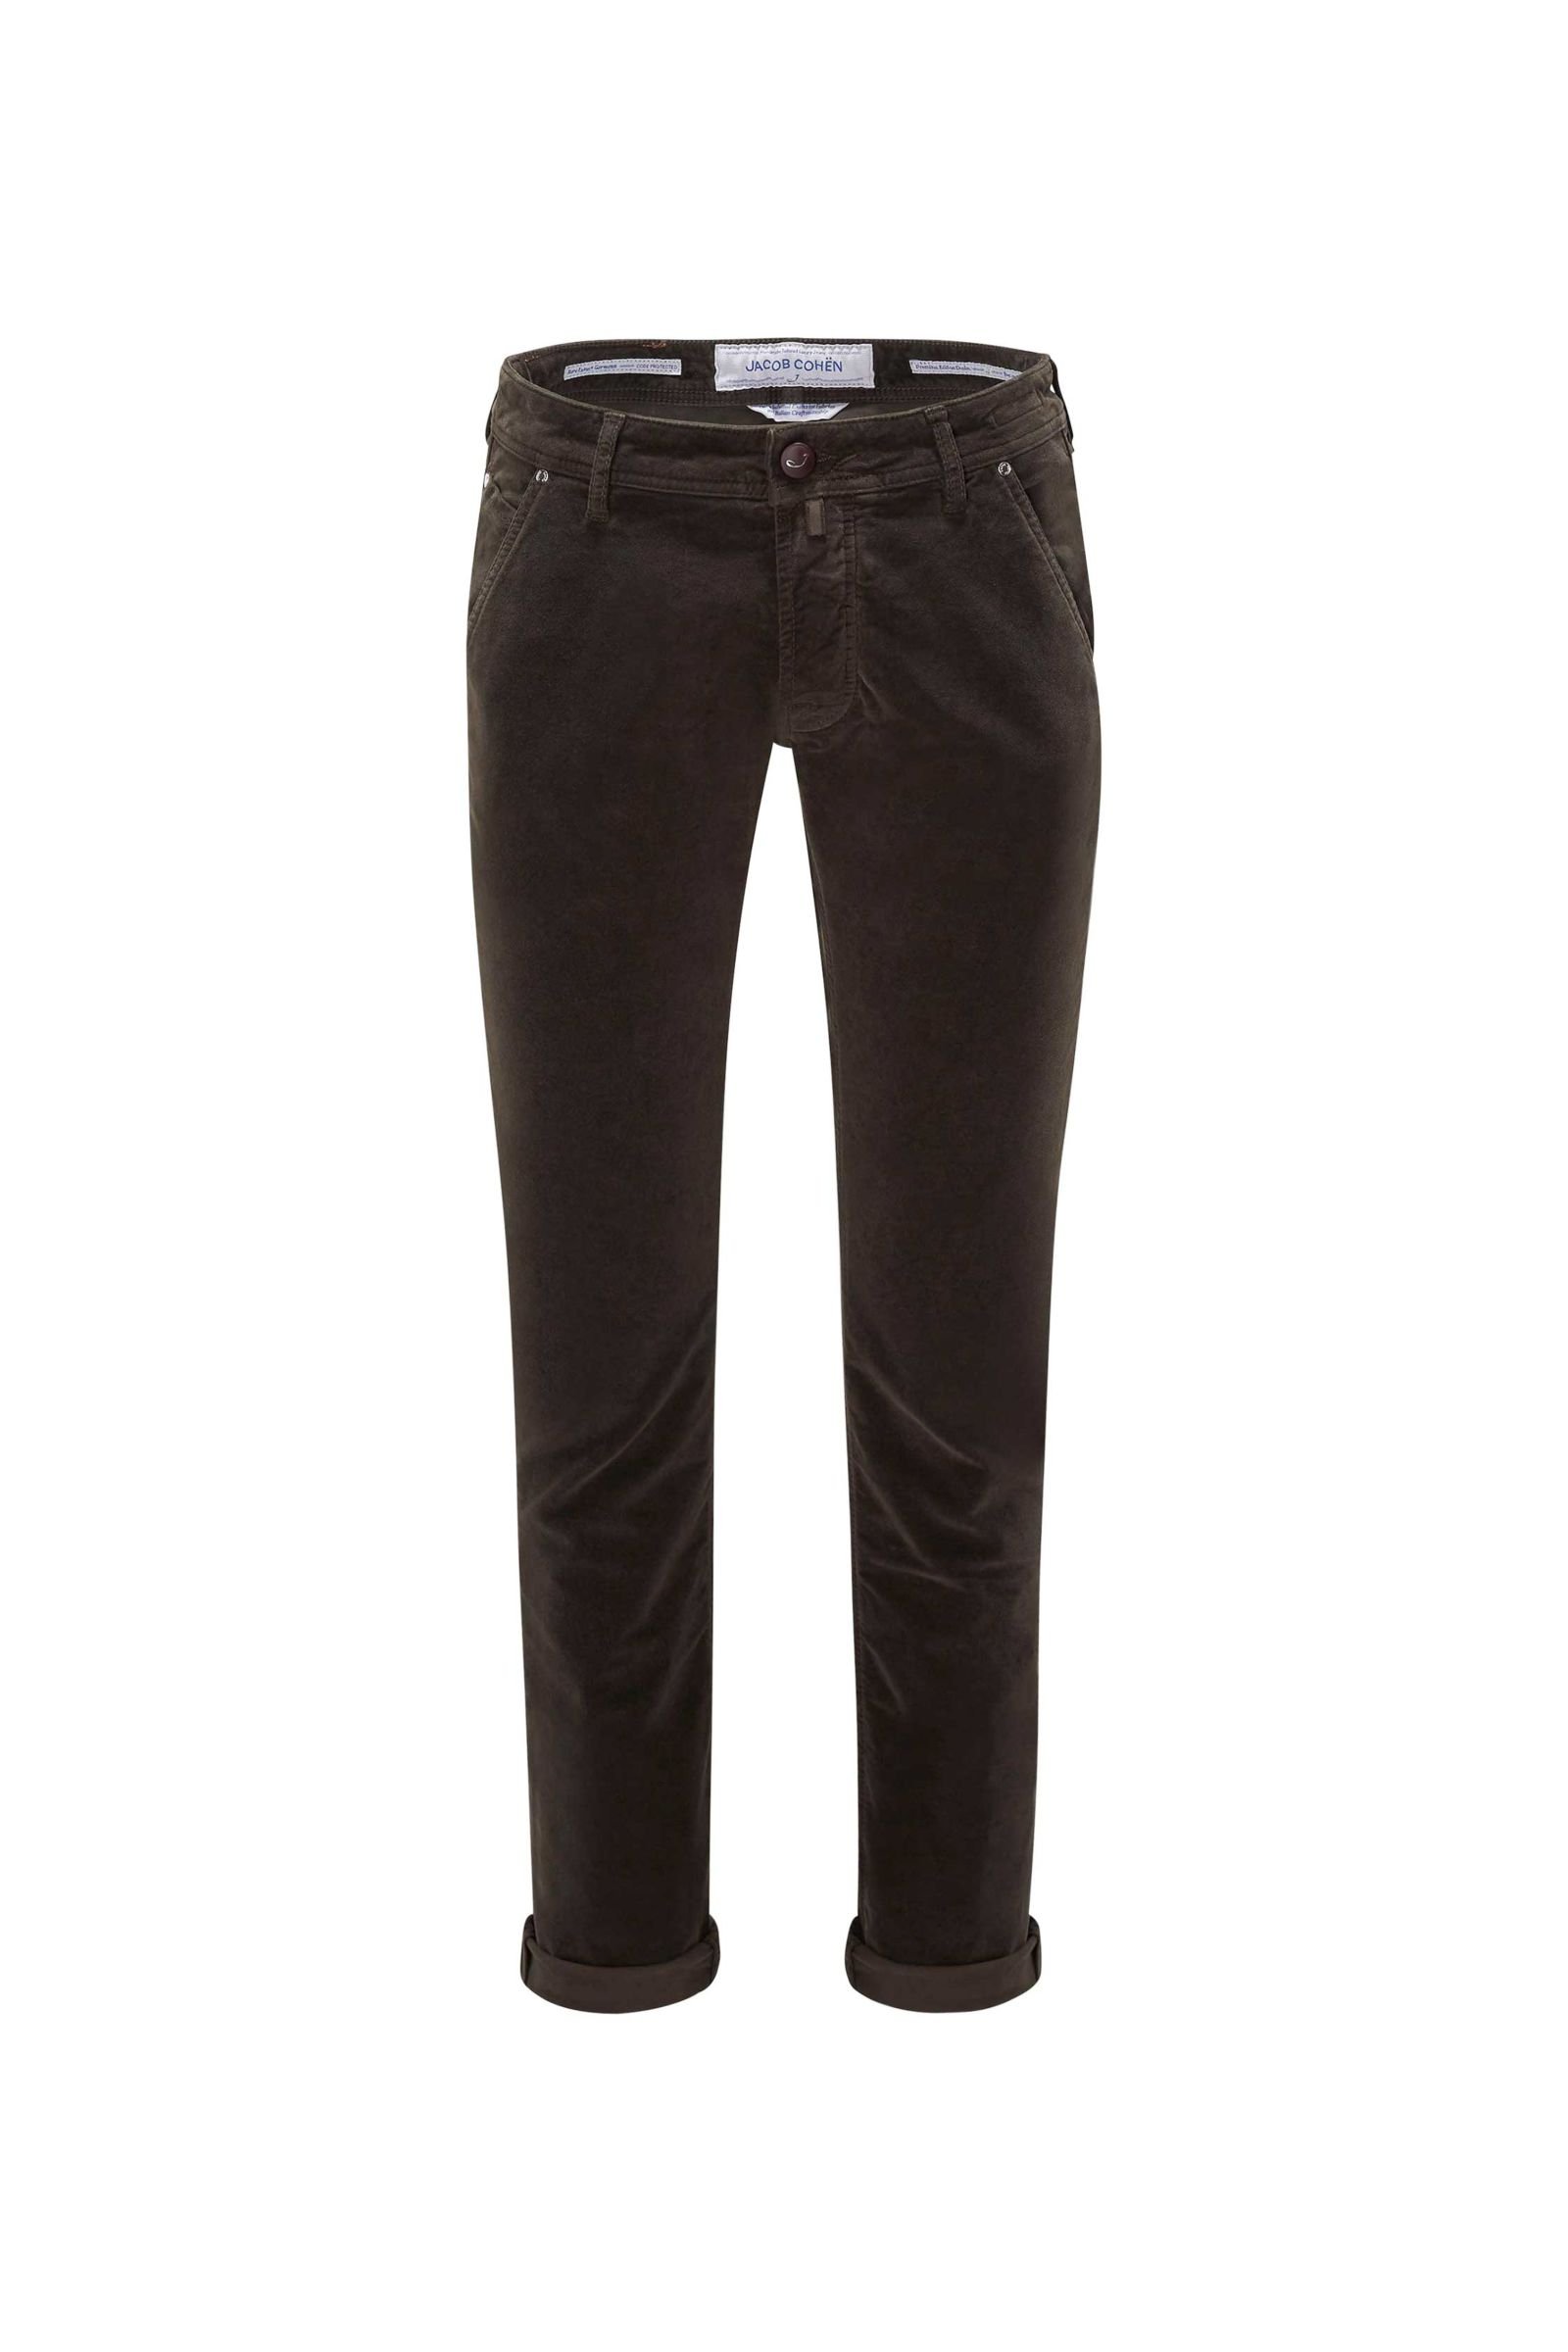 Fustian trousers 'J613 Comfort Slim Fit' dark brown